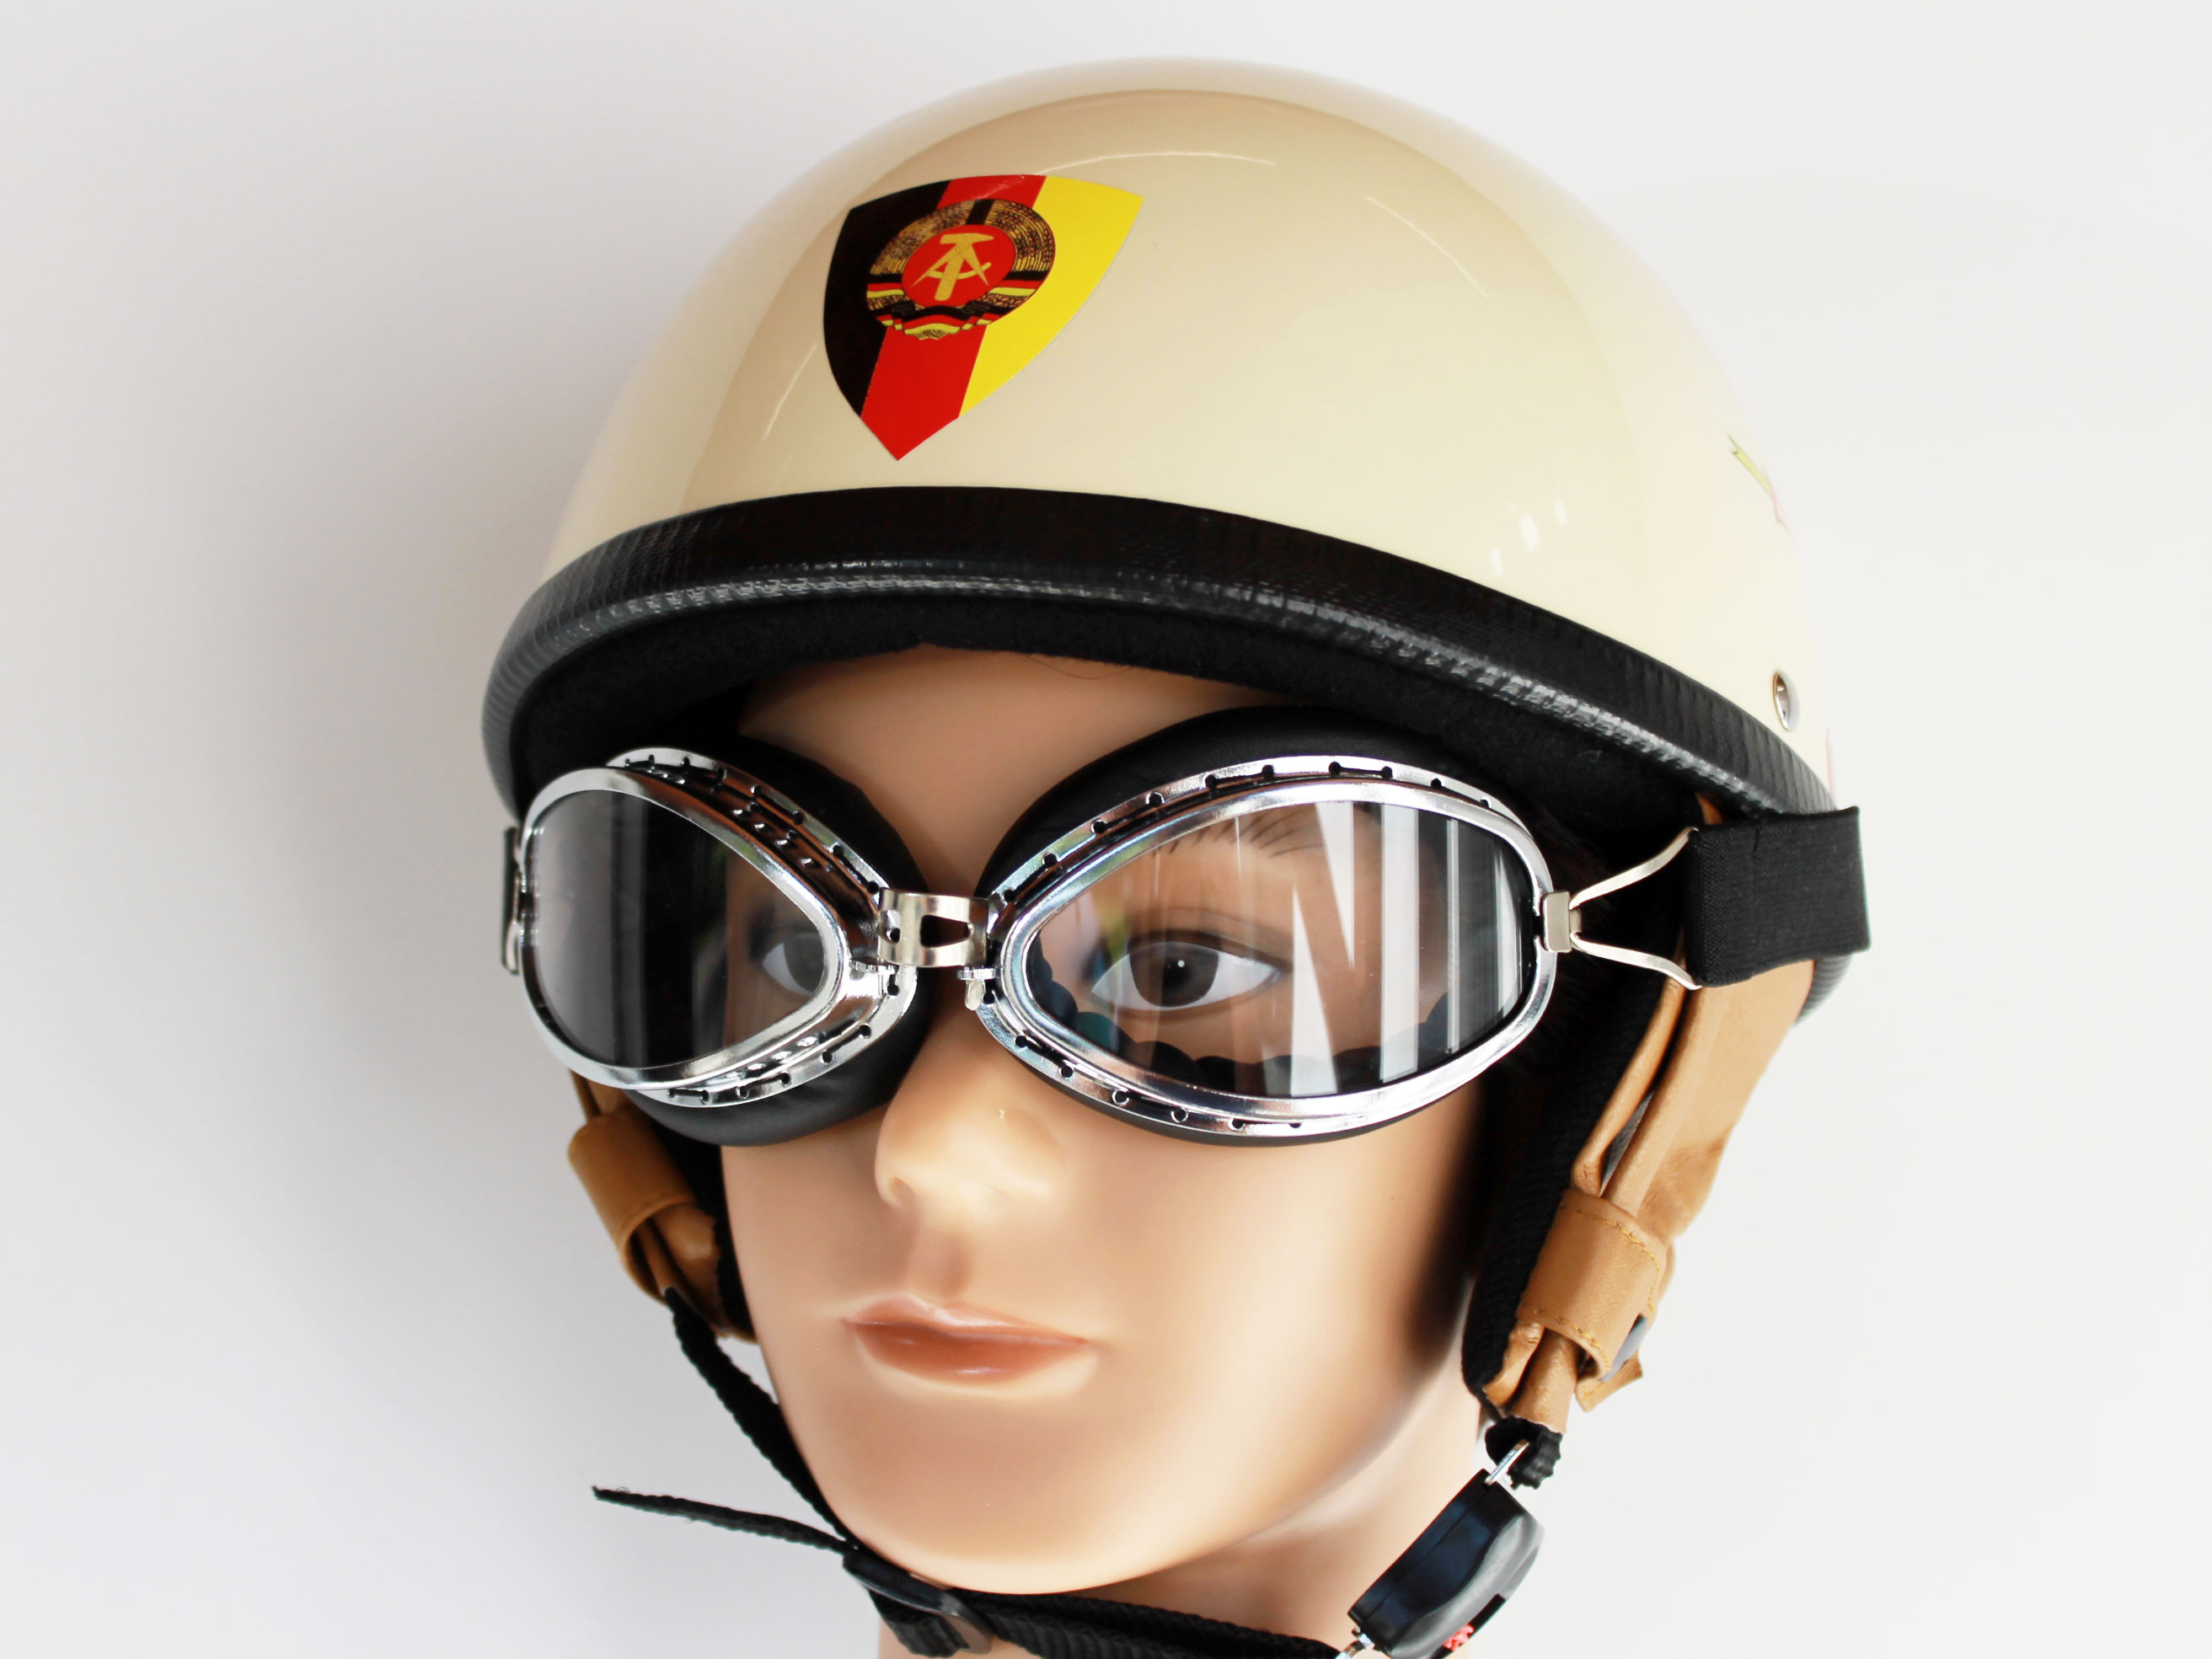 Helm  Nationalkader DDR  RB 500 elfenbein Größe XXL mit Brille, Helm-Sets, Classic Helme, Helme, Ausrüstung